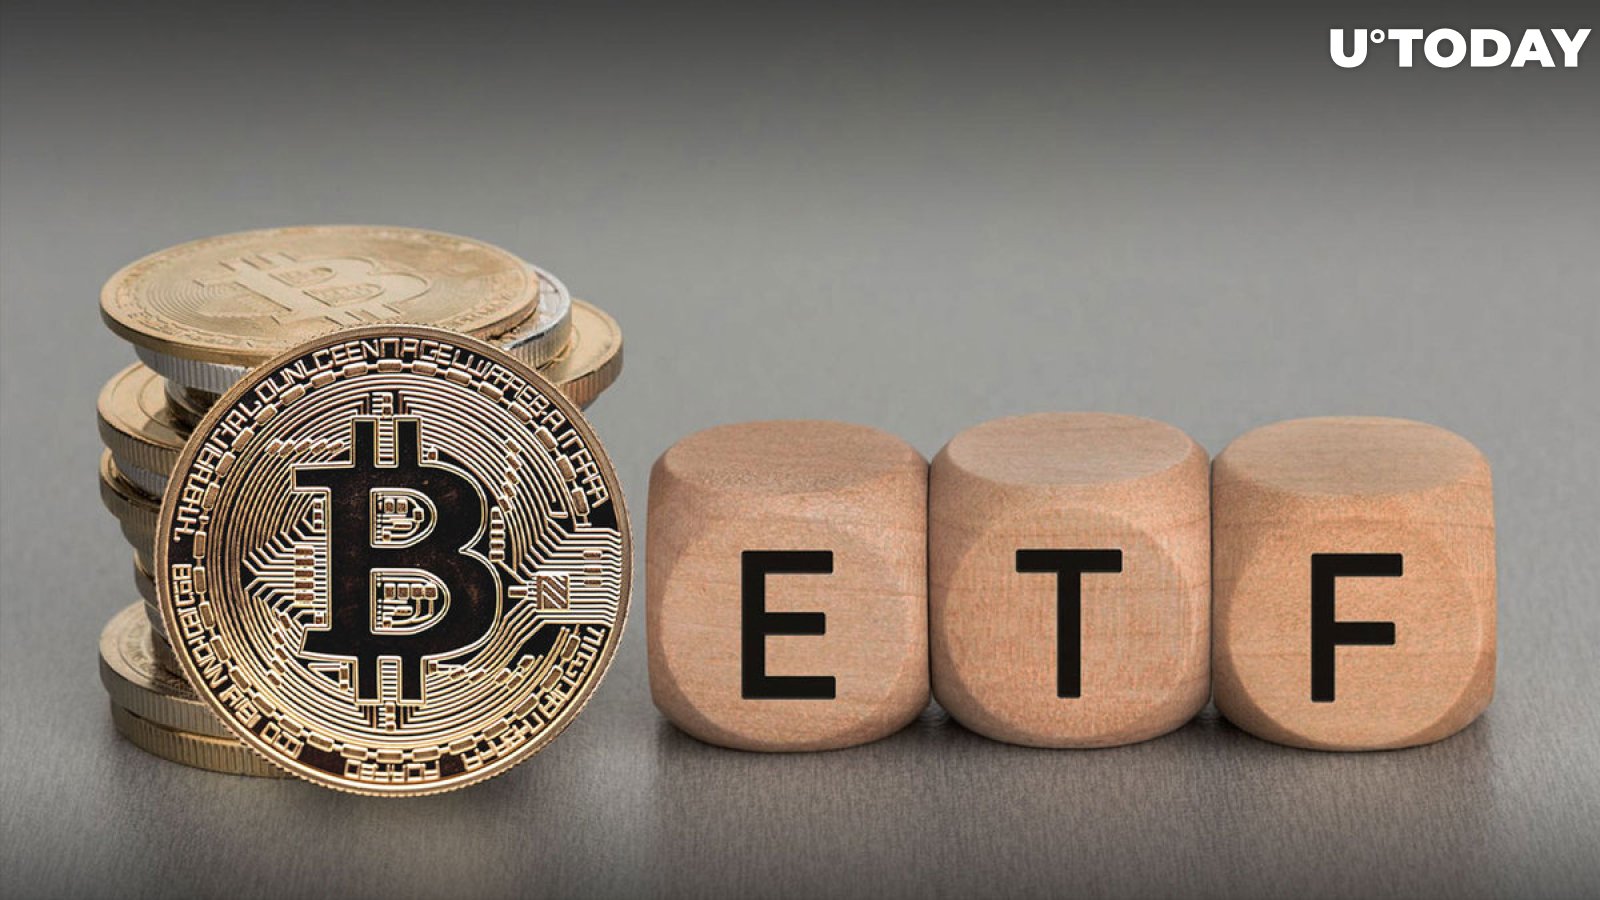 Óriási 14 milliárd dollár bitcoinban (BTC), amelyet az ETF-szolgáltatók halmoztak fel